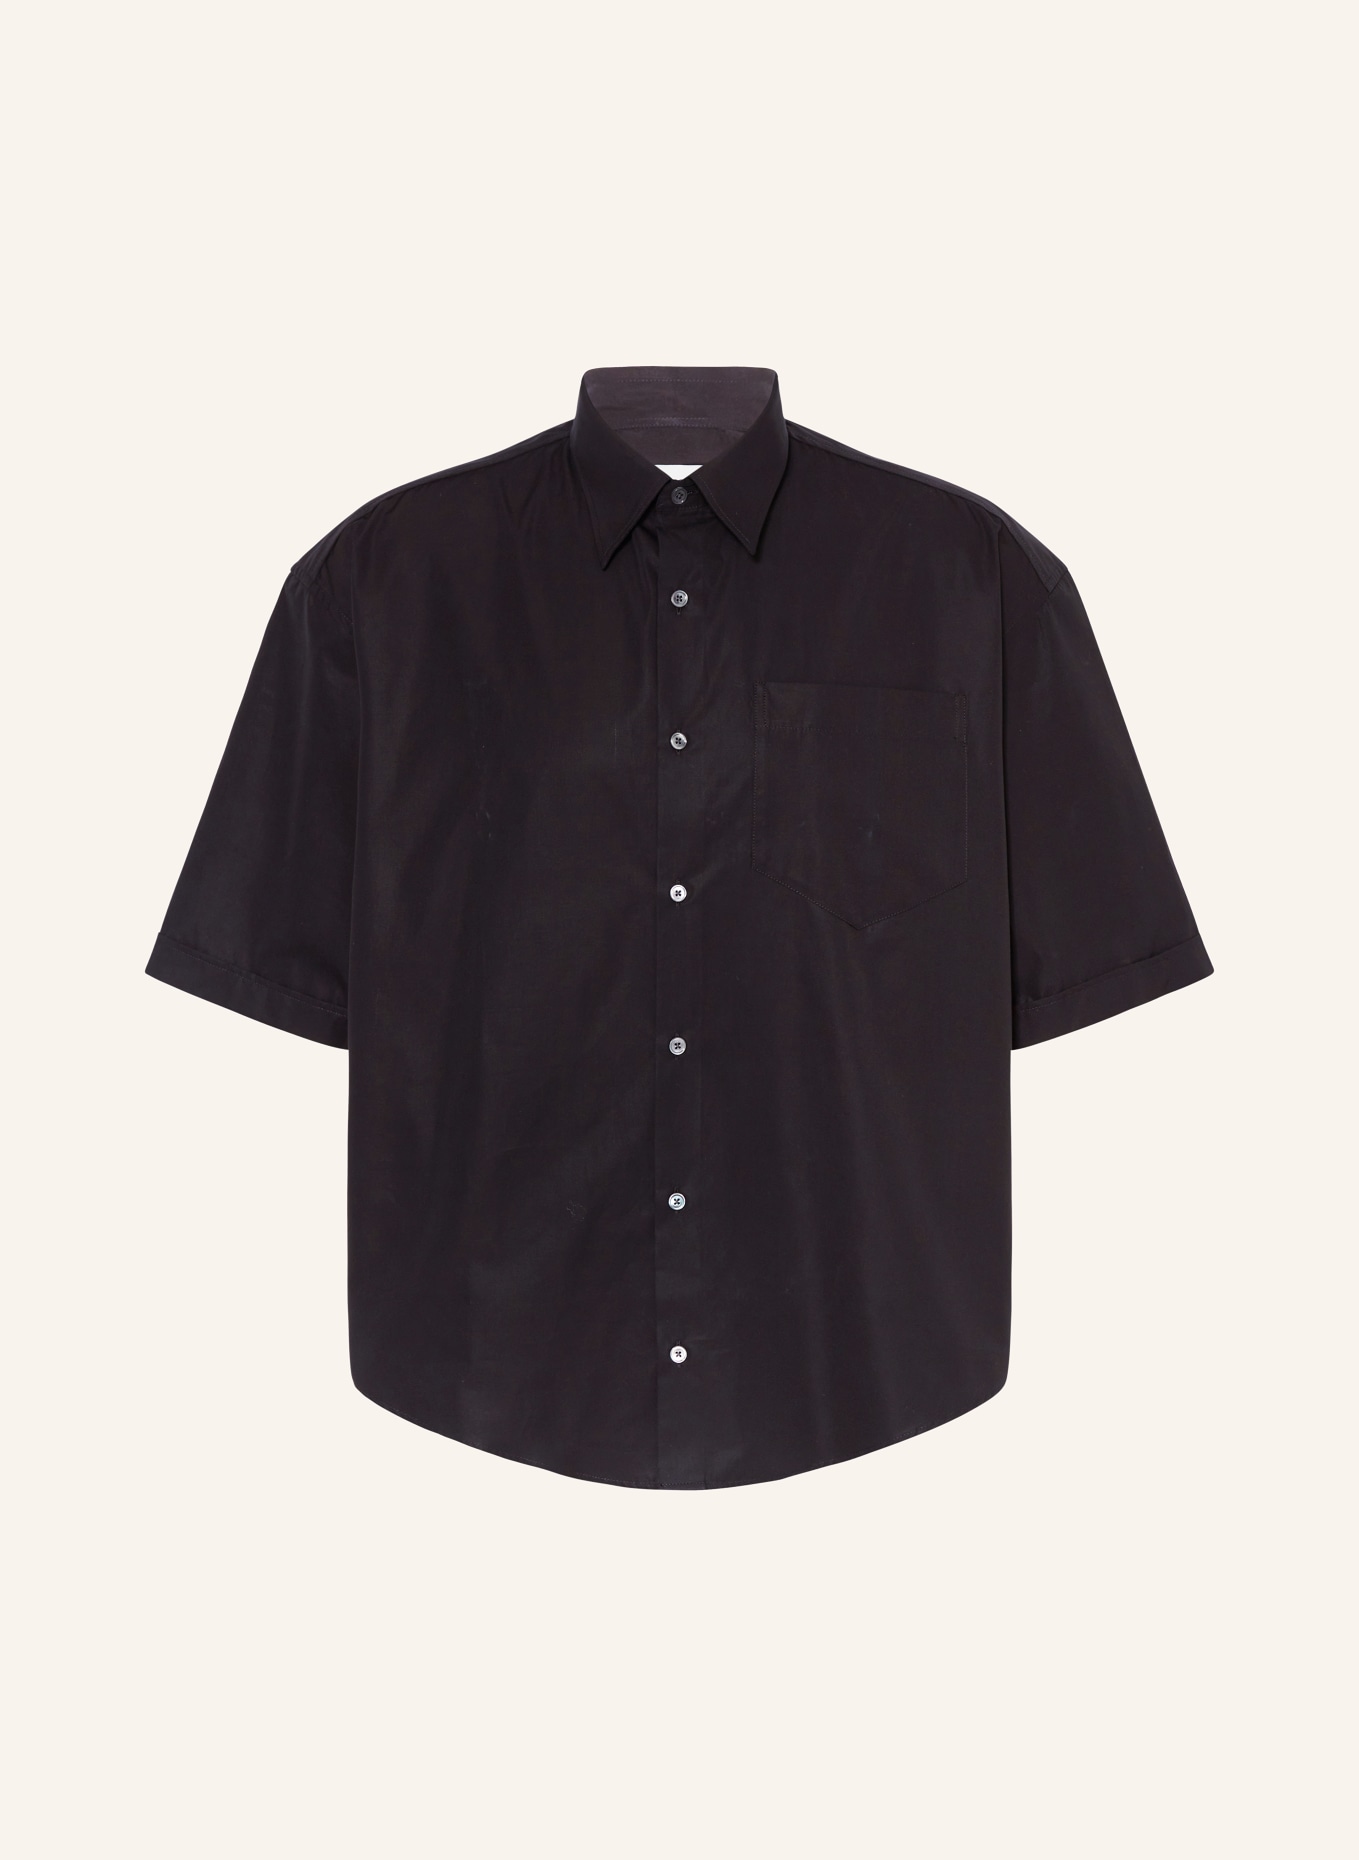 AMI PARIS Short sleeve shirt comfort fit, Color: BLACK (Image 1)